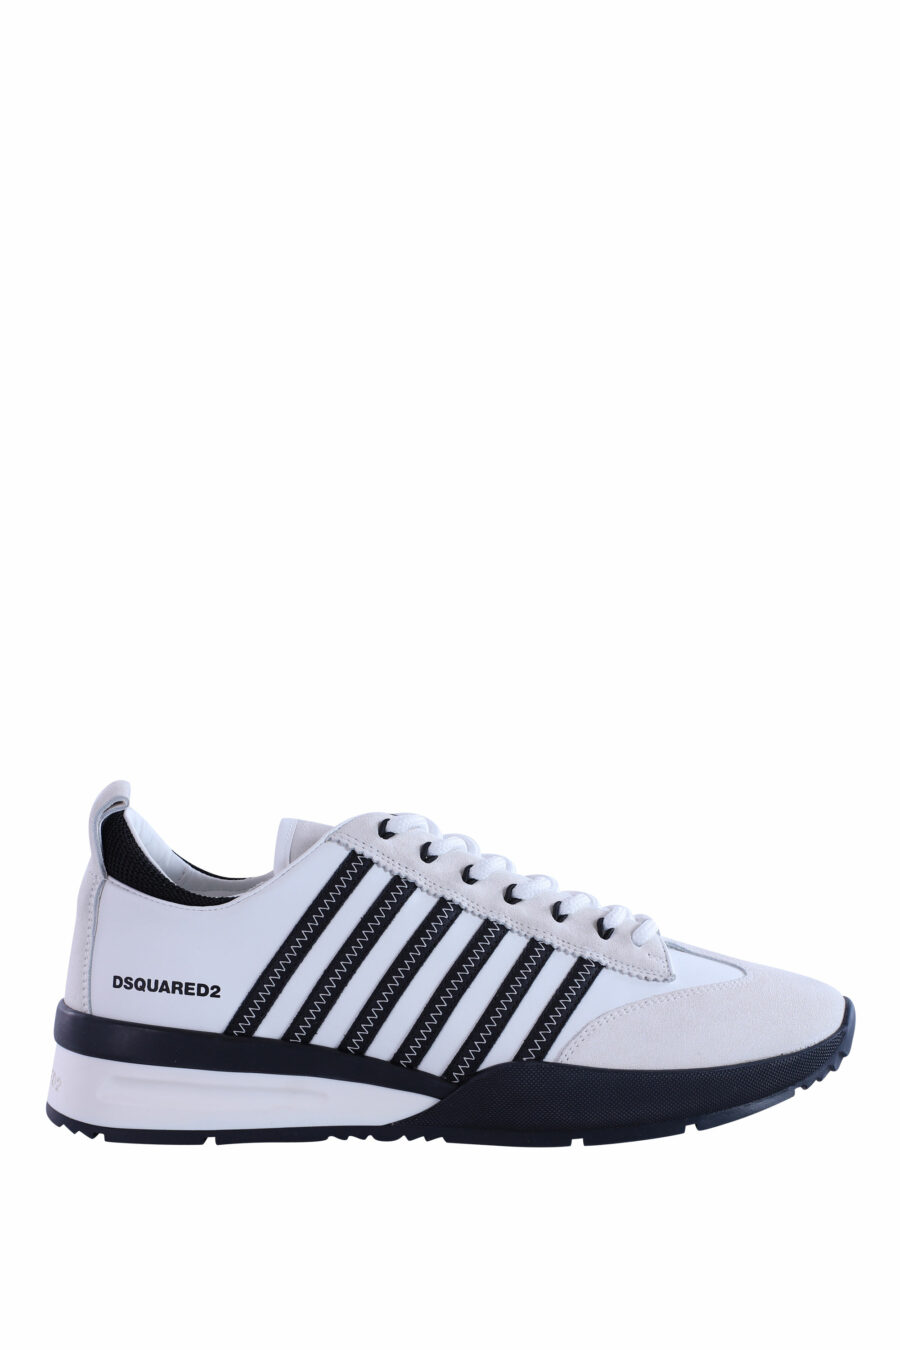 Zapatillas blancas y negras con lineas azules - IMG 2961